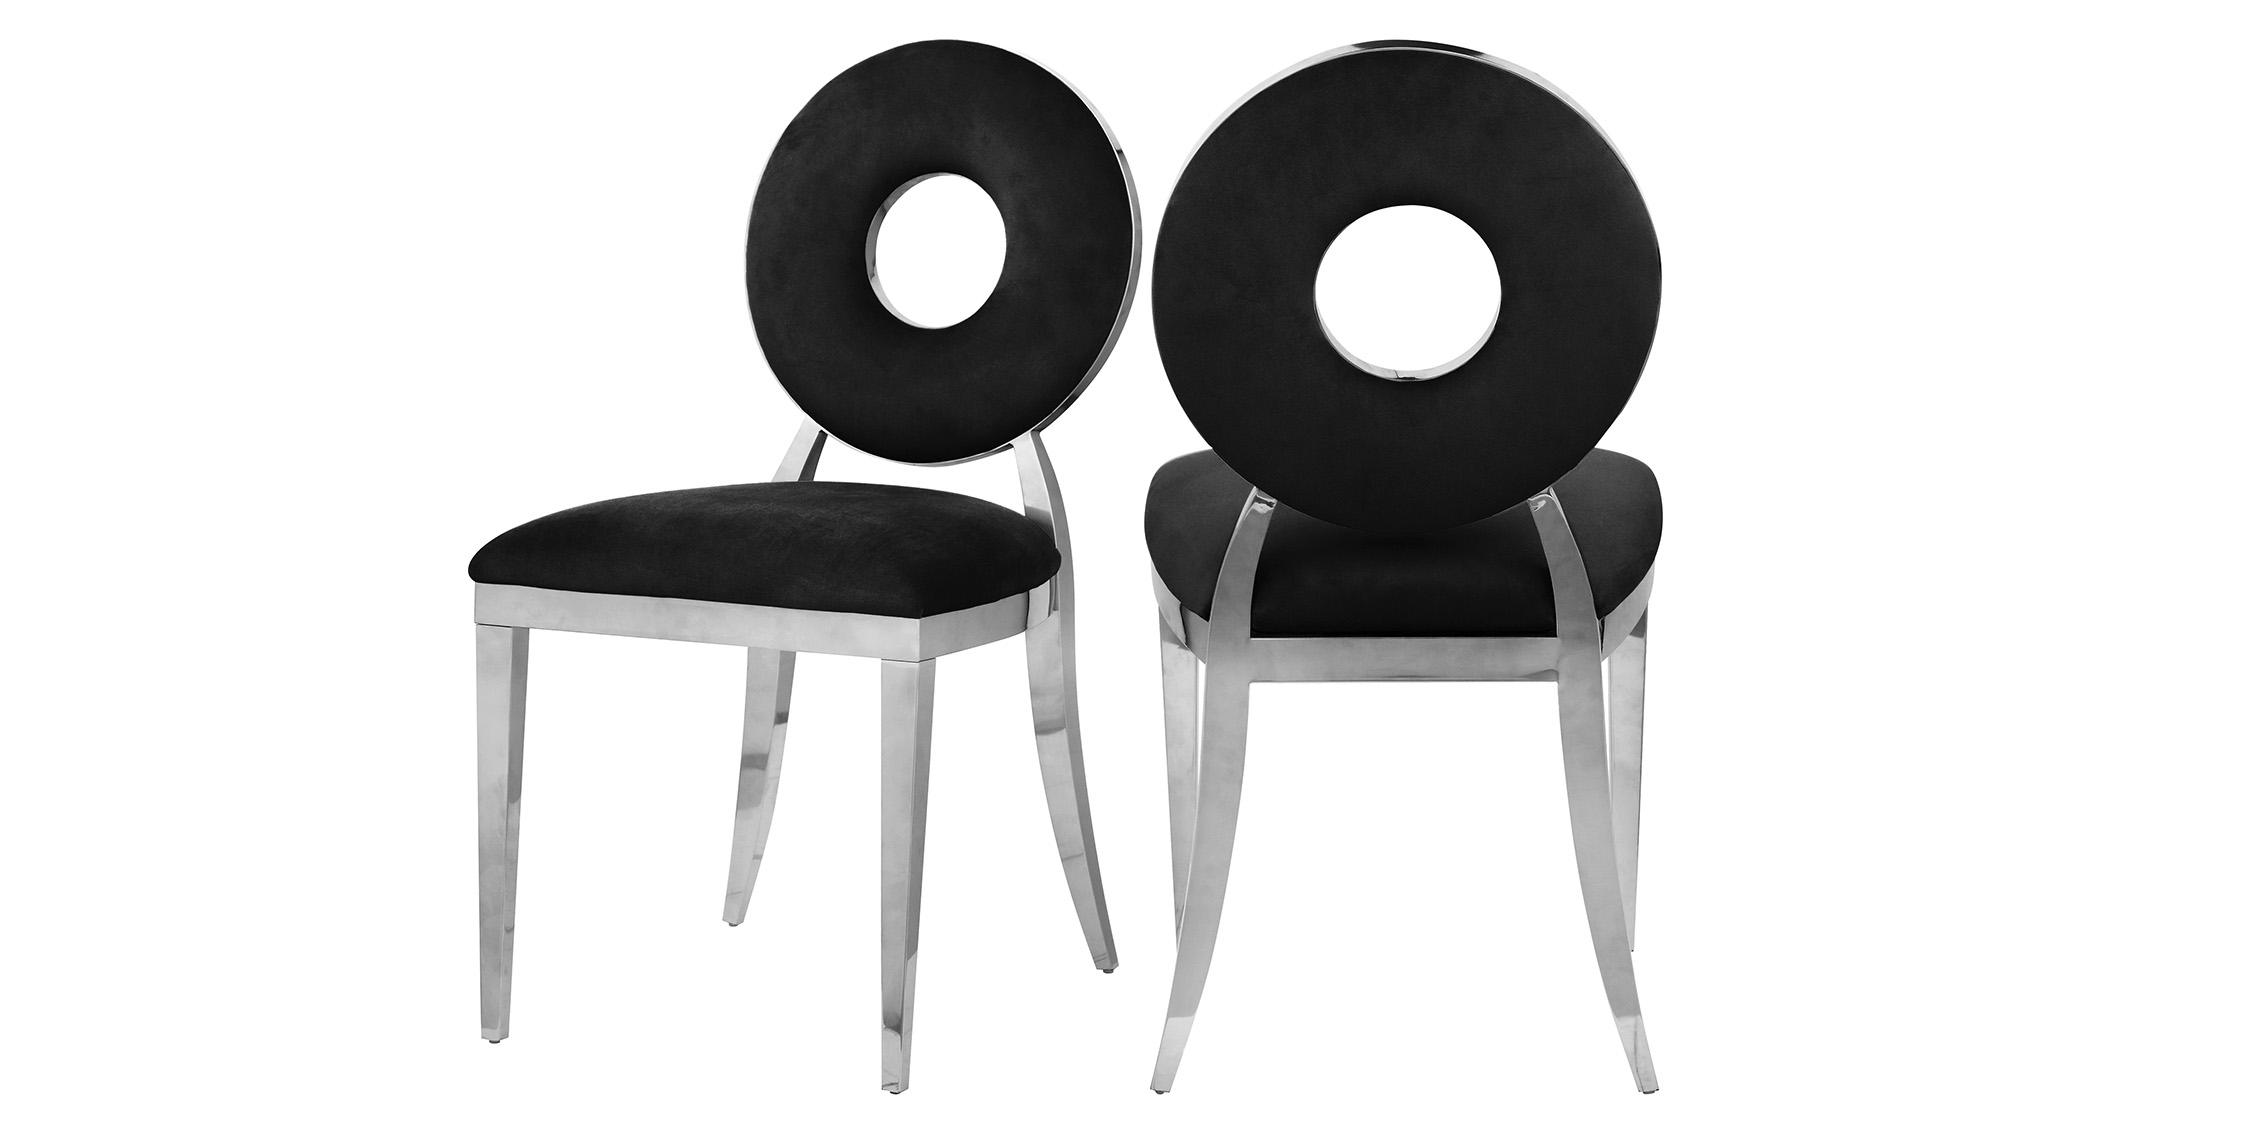 Contemporary Dining Chair Set CAROUSEL 859Black-C 859Black-C in Chrome, Black Velvet